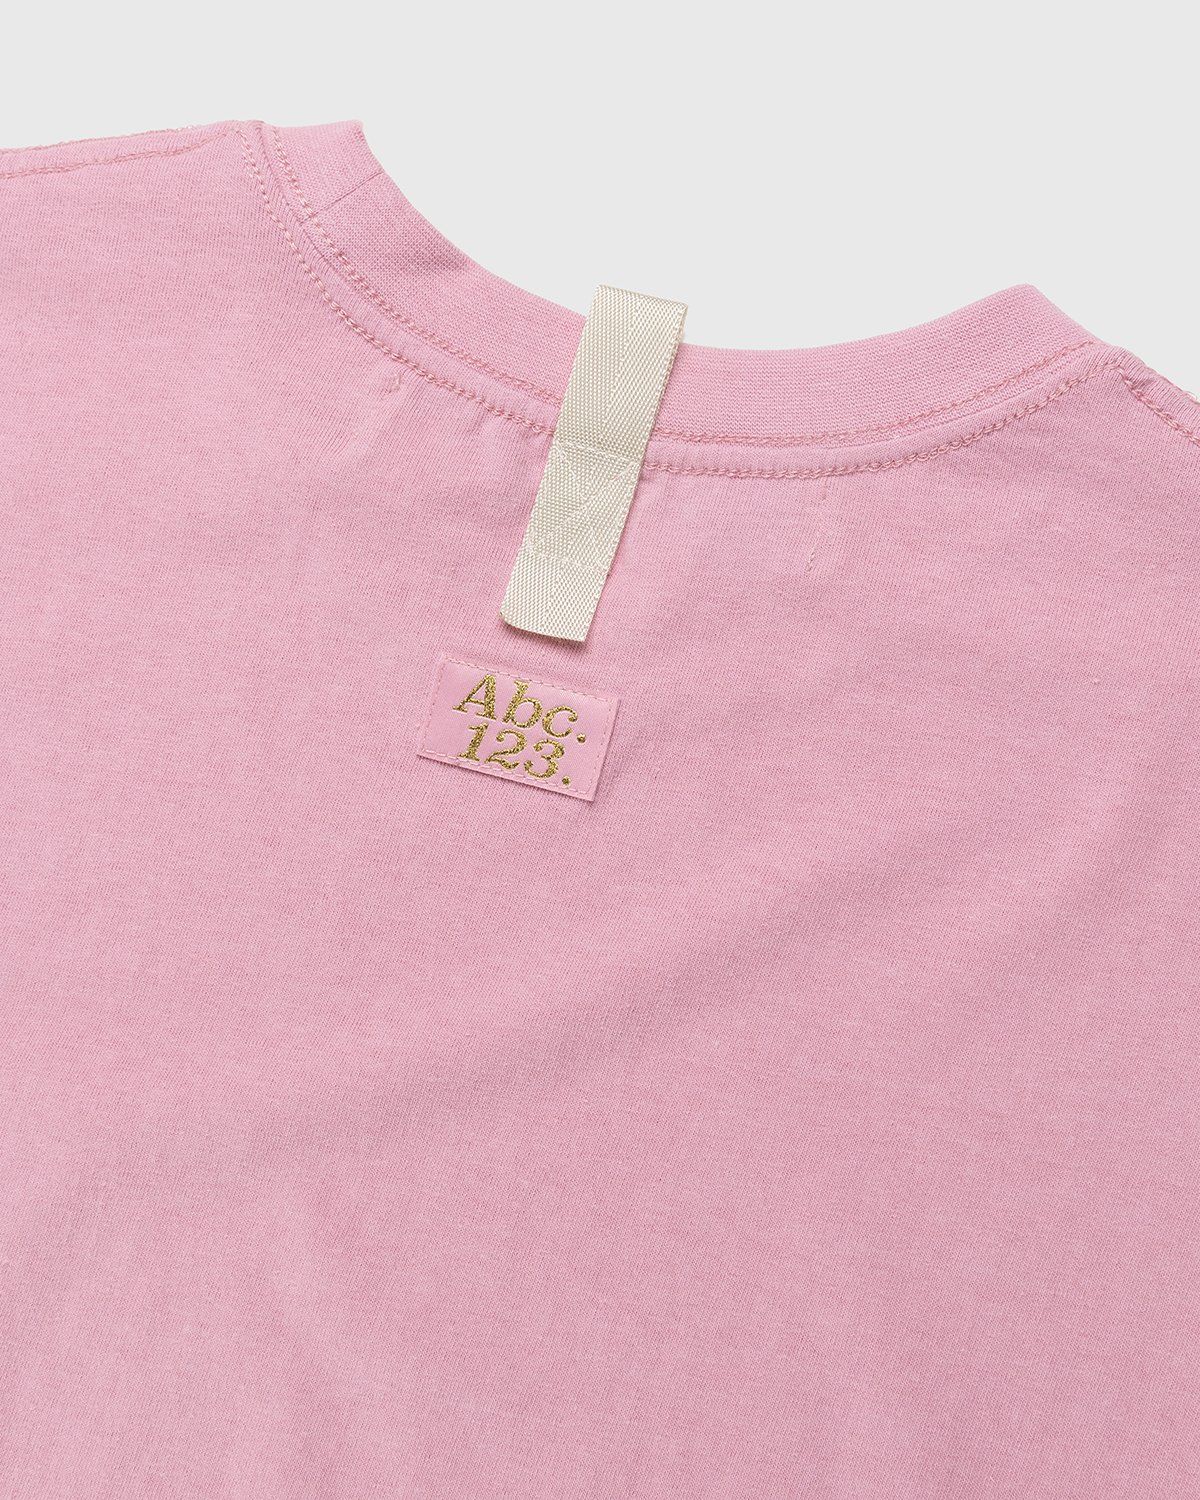 Abc. – Short-Sleeve Pocket Tee Morganite - T-Shirts - Pink - Image 3